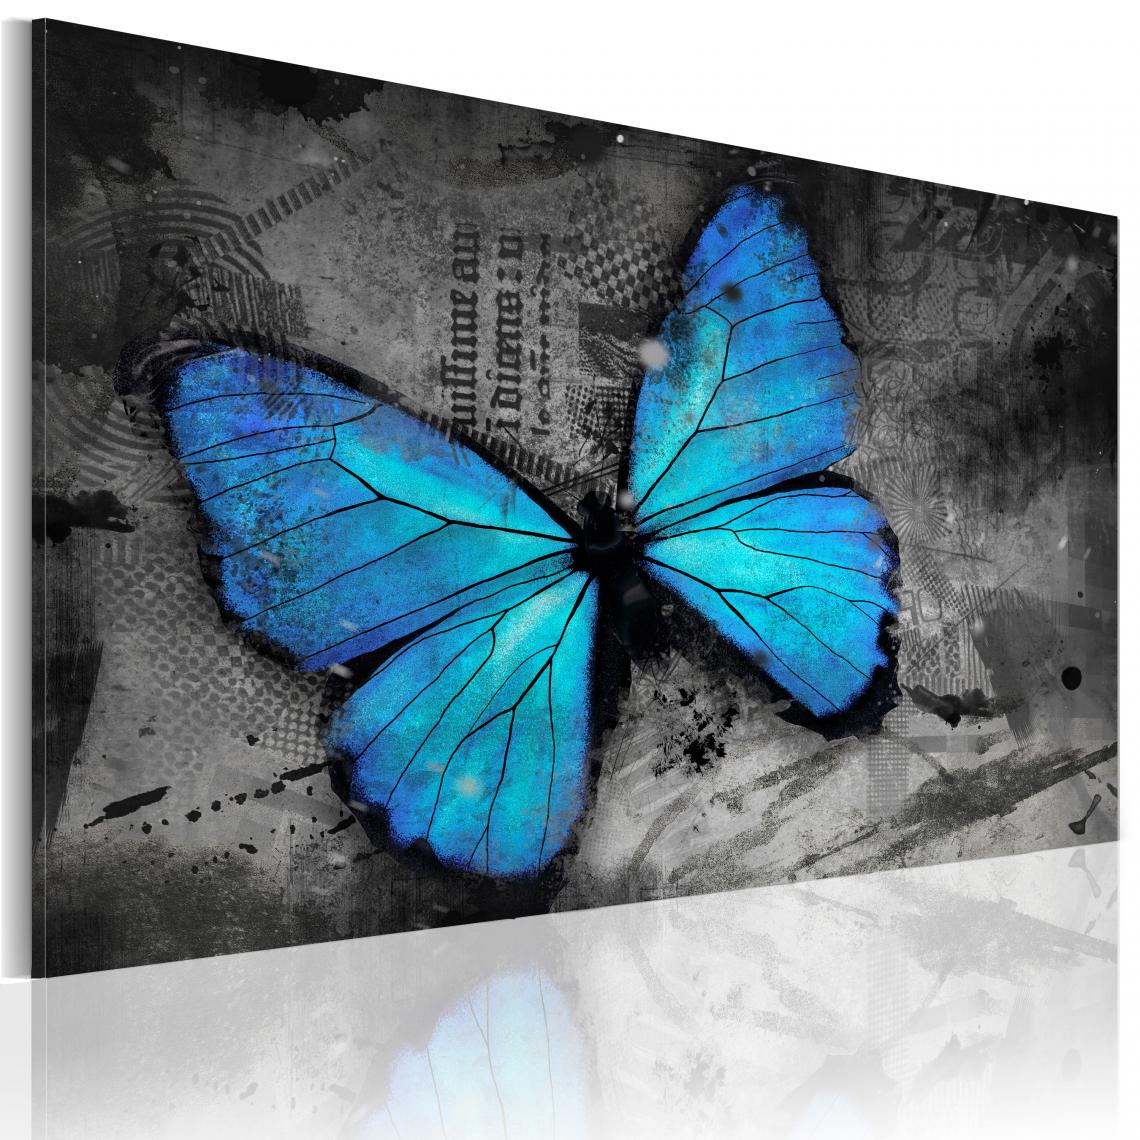 Decoshop26 - Tableau sur toile décoration murale image imprimée cadre en bois à suspendre Etude d'un papillon 120x80 cm 11_0009640 - Tableaux, peintures